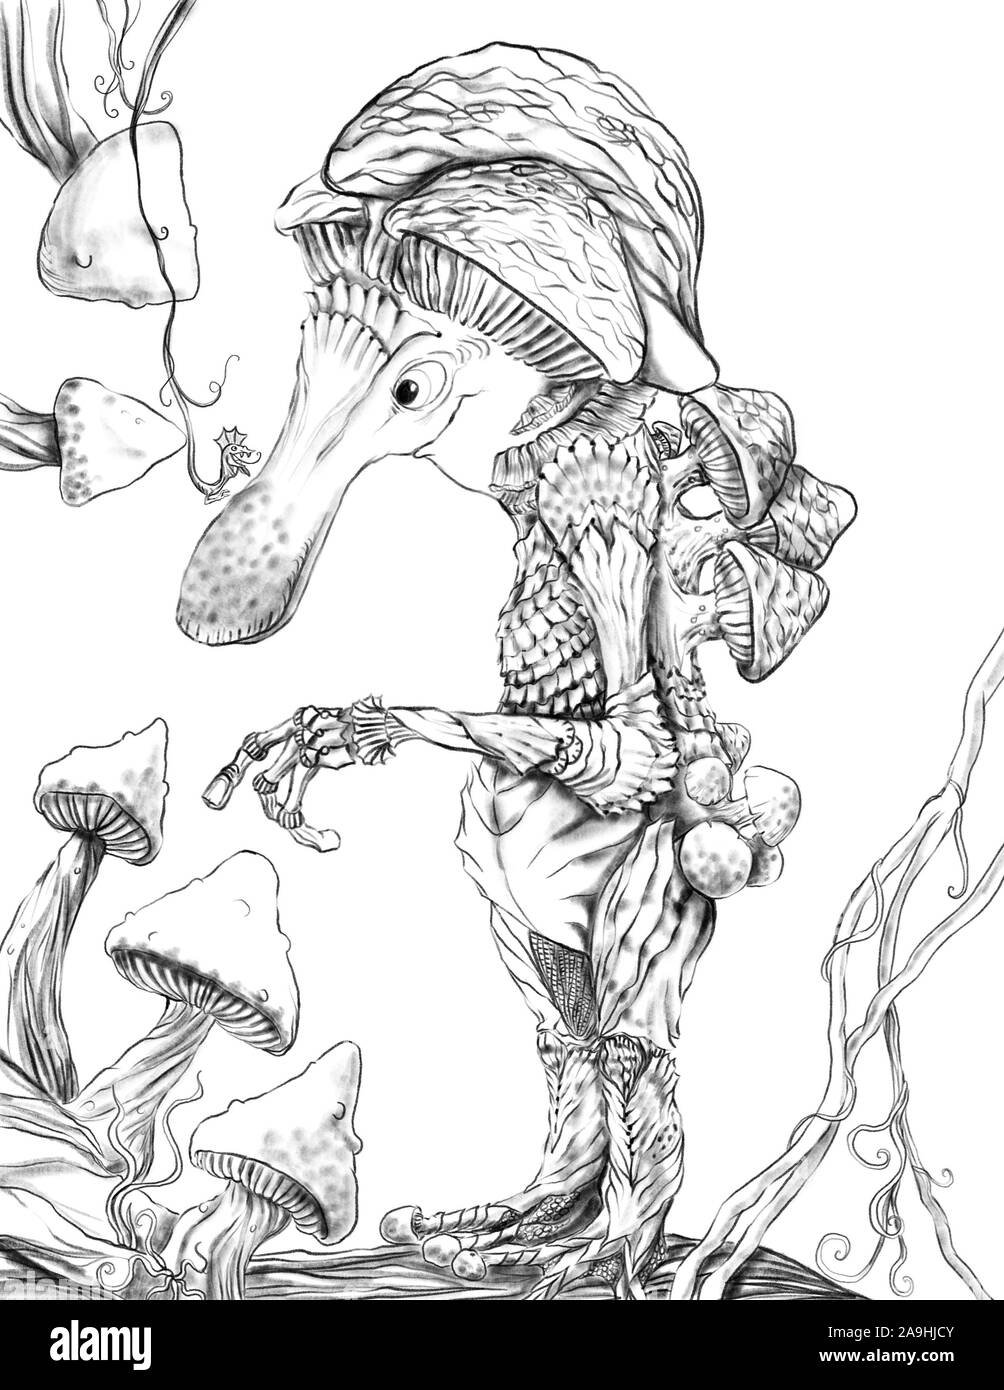 Pilz Mann, eine anthropomorphe Fantasy monströse Kreatur sprießen Pilze auf andere Pilze wie Champignons und toadsctools. Eine magische Stockfoto